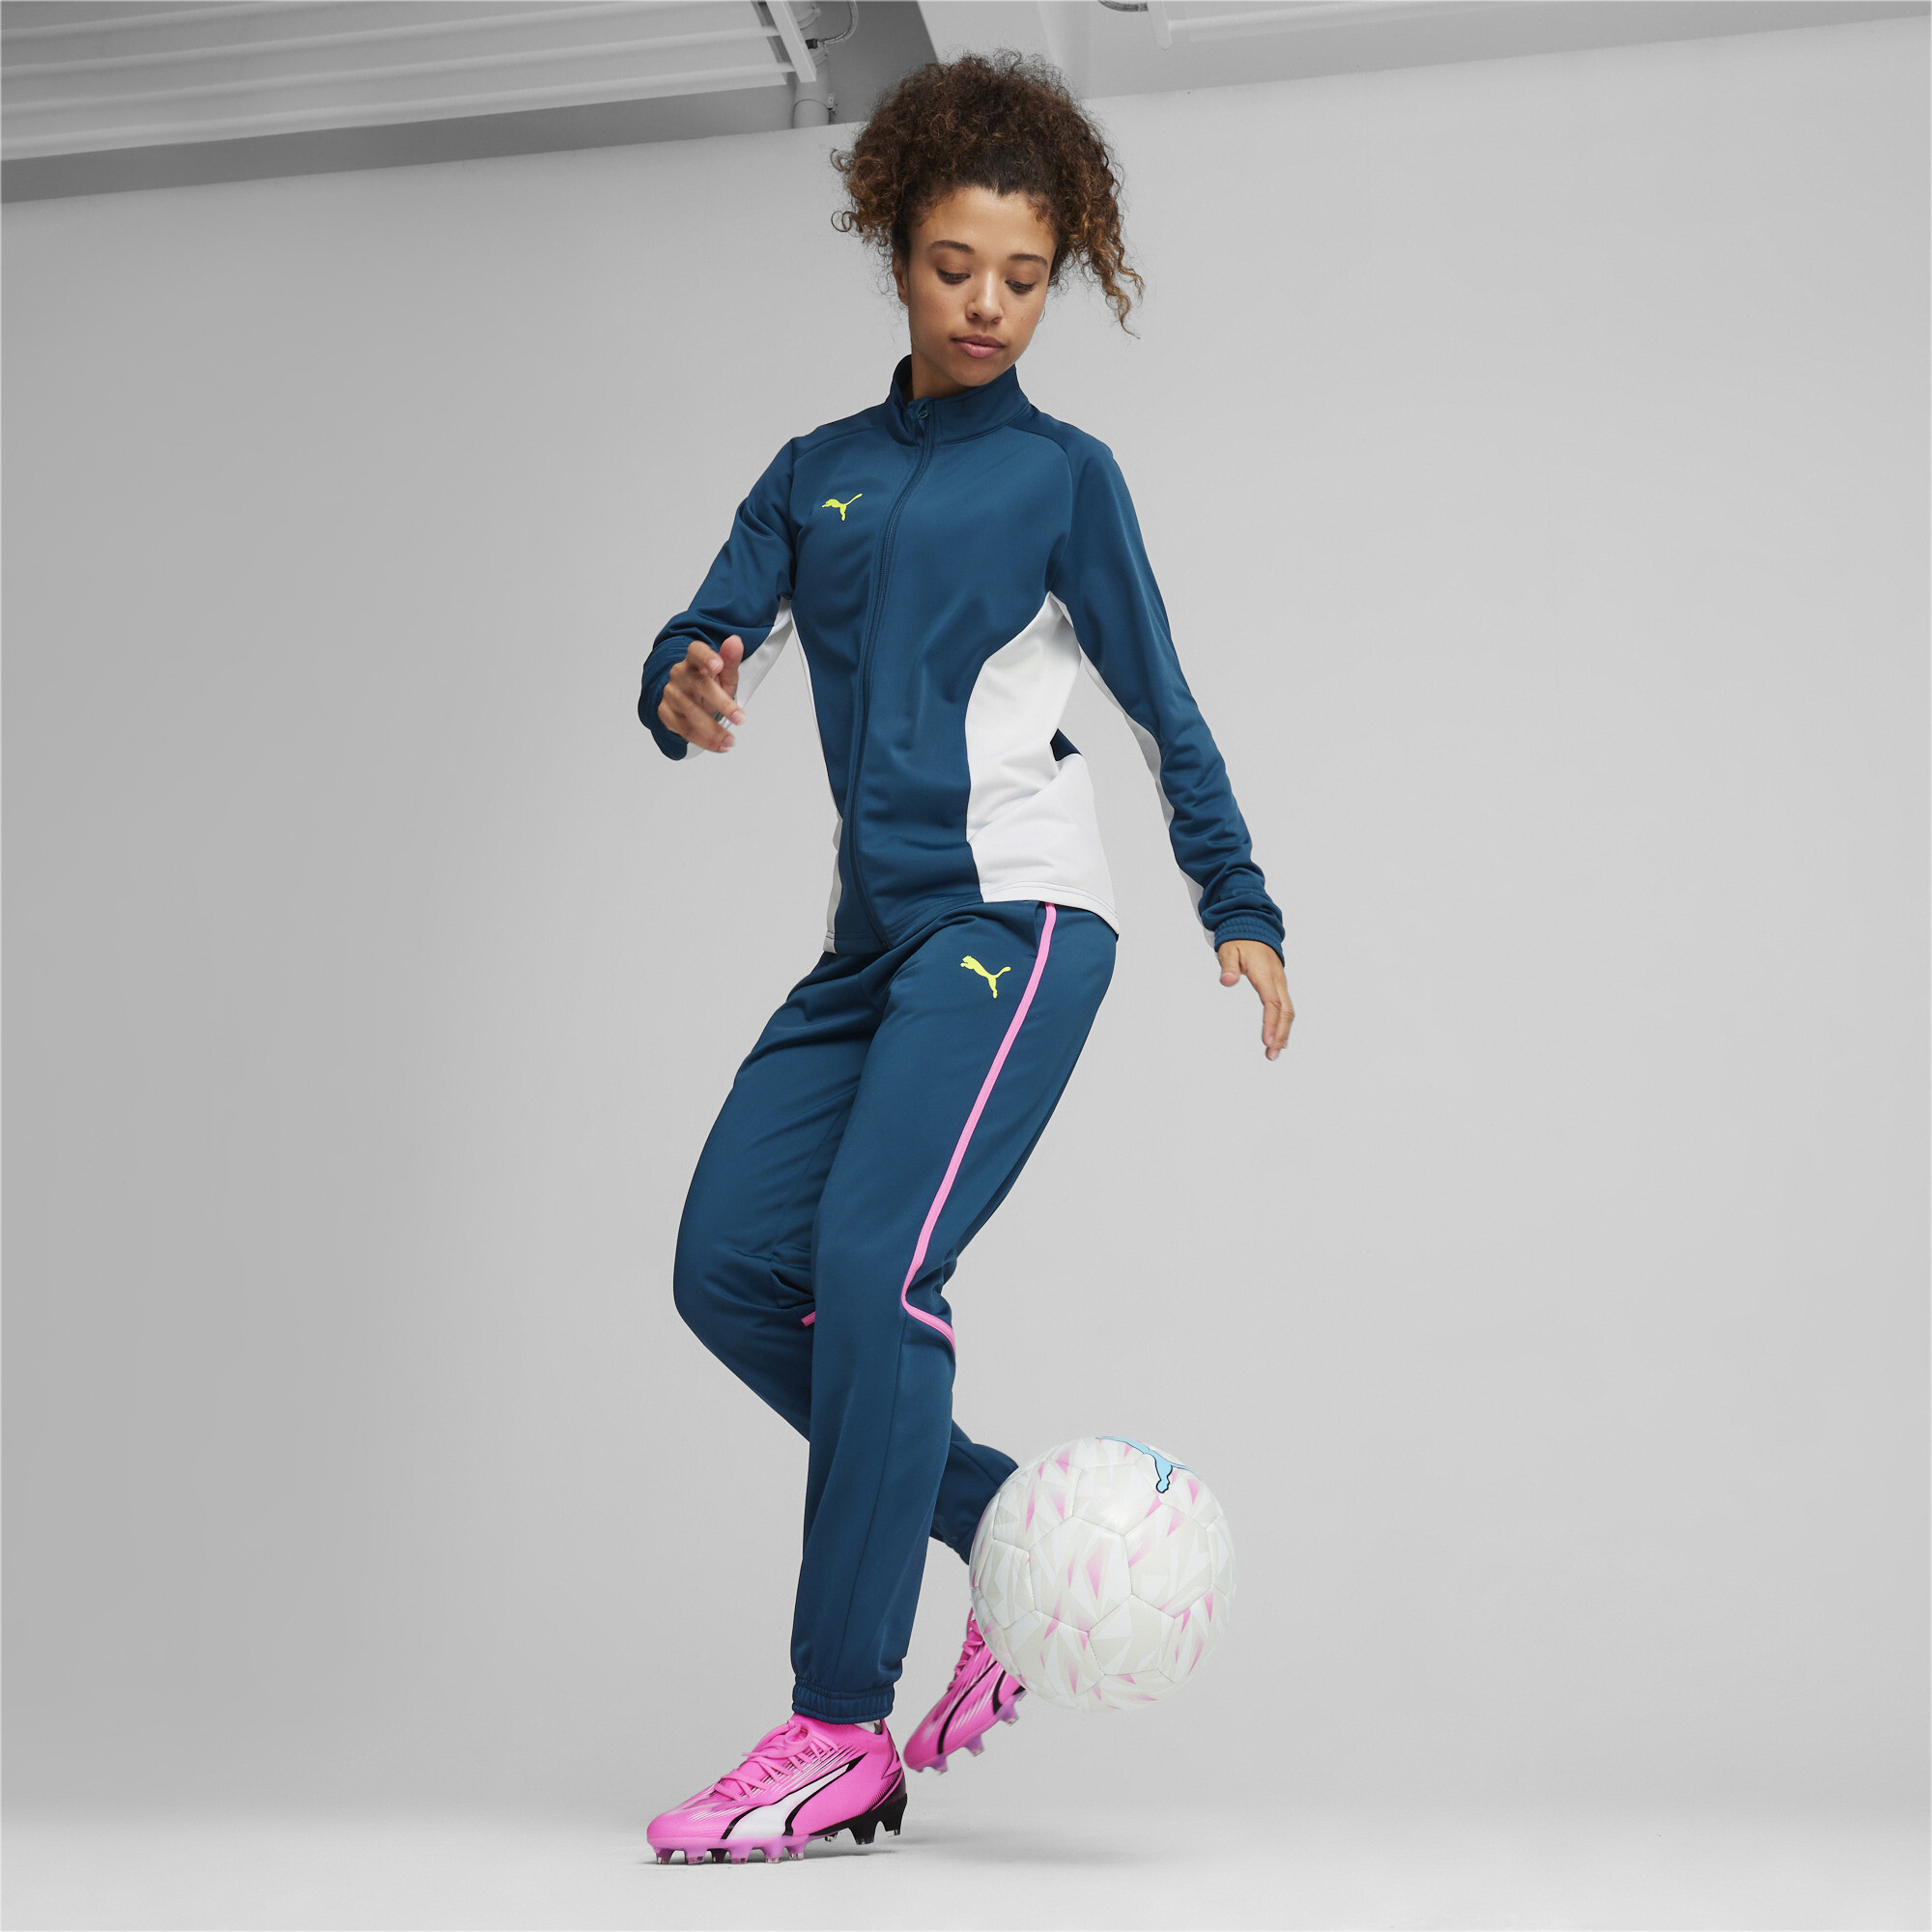 Women's PUMA ULTRA MATCH FG/AG Football Boots In Pink, Size EU 37